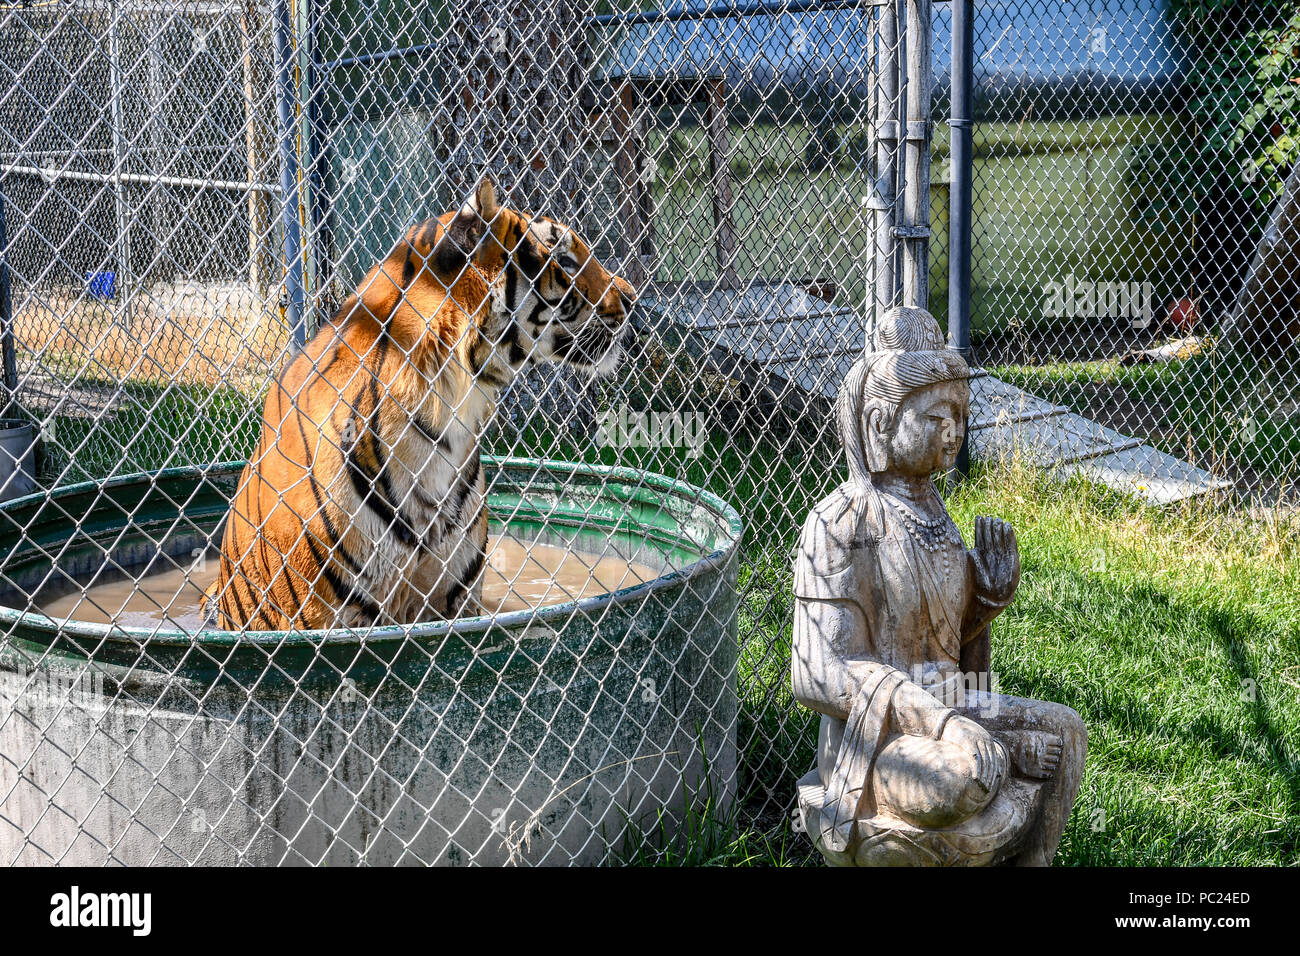 Una splendida tigre del Bengala si siede in una vasca di acqua in una gabbia piccola allo zoo. Foto Stock